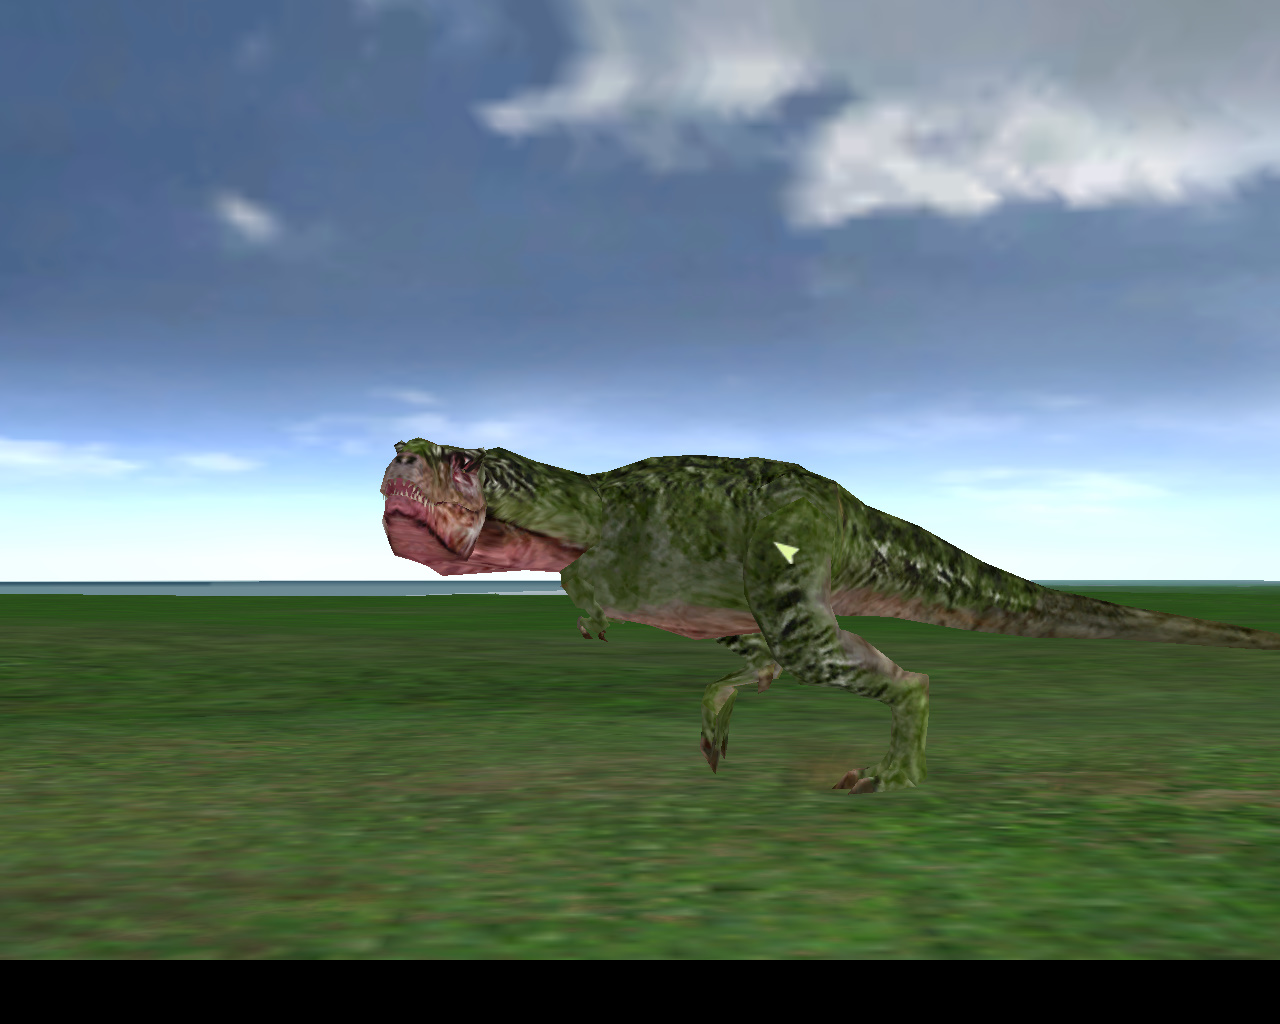 jurassic park operation genesis t rex vs spinosaurus